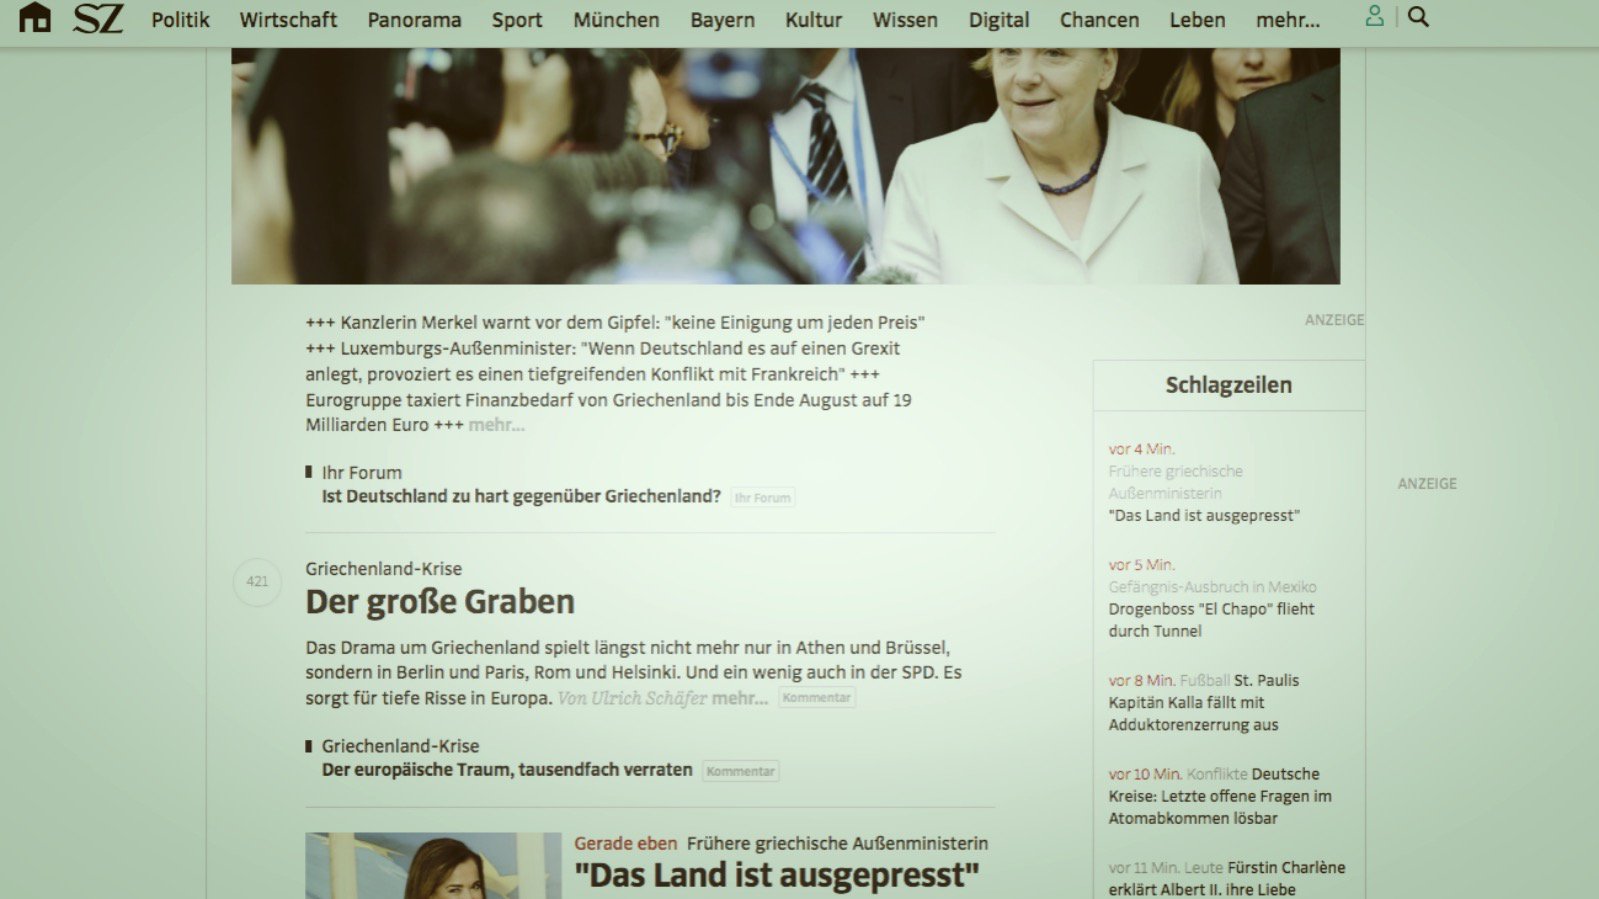 Startseite der Süddeutschen am 12.07.2015